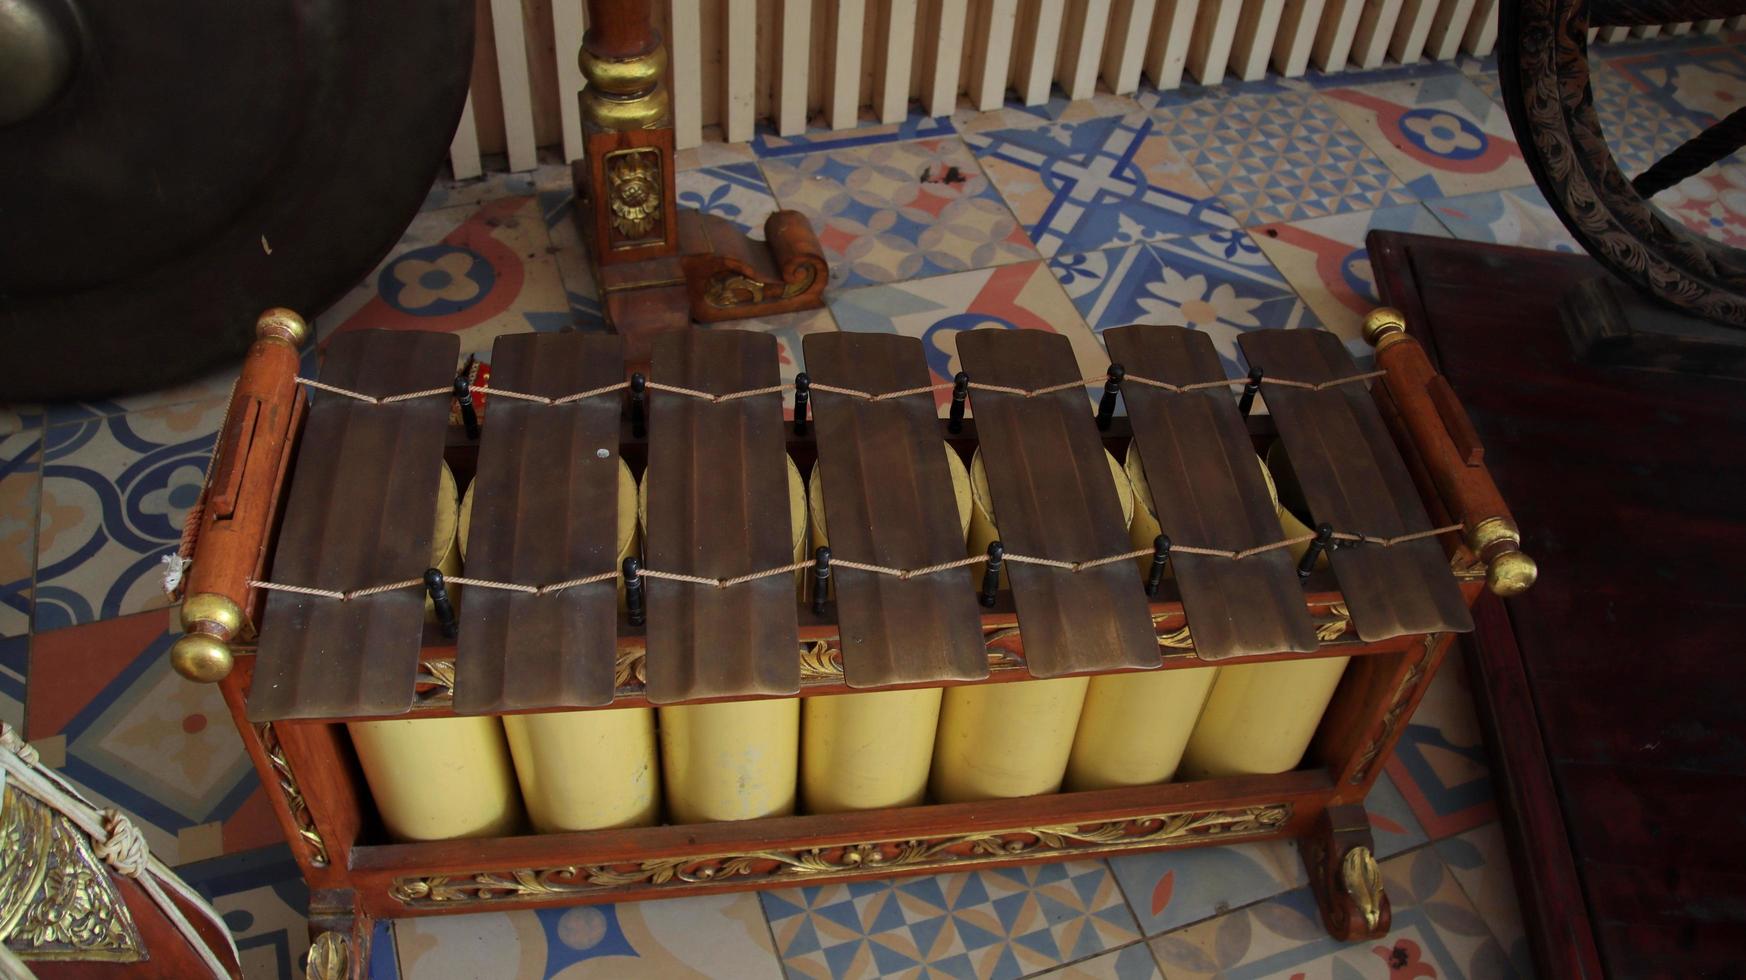 instrumento musical tradicional del javanés indonesio. la música gamelan de indonesia. un conjunto de instrumentos musicales gamelan javaneses foto